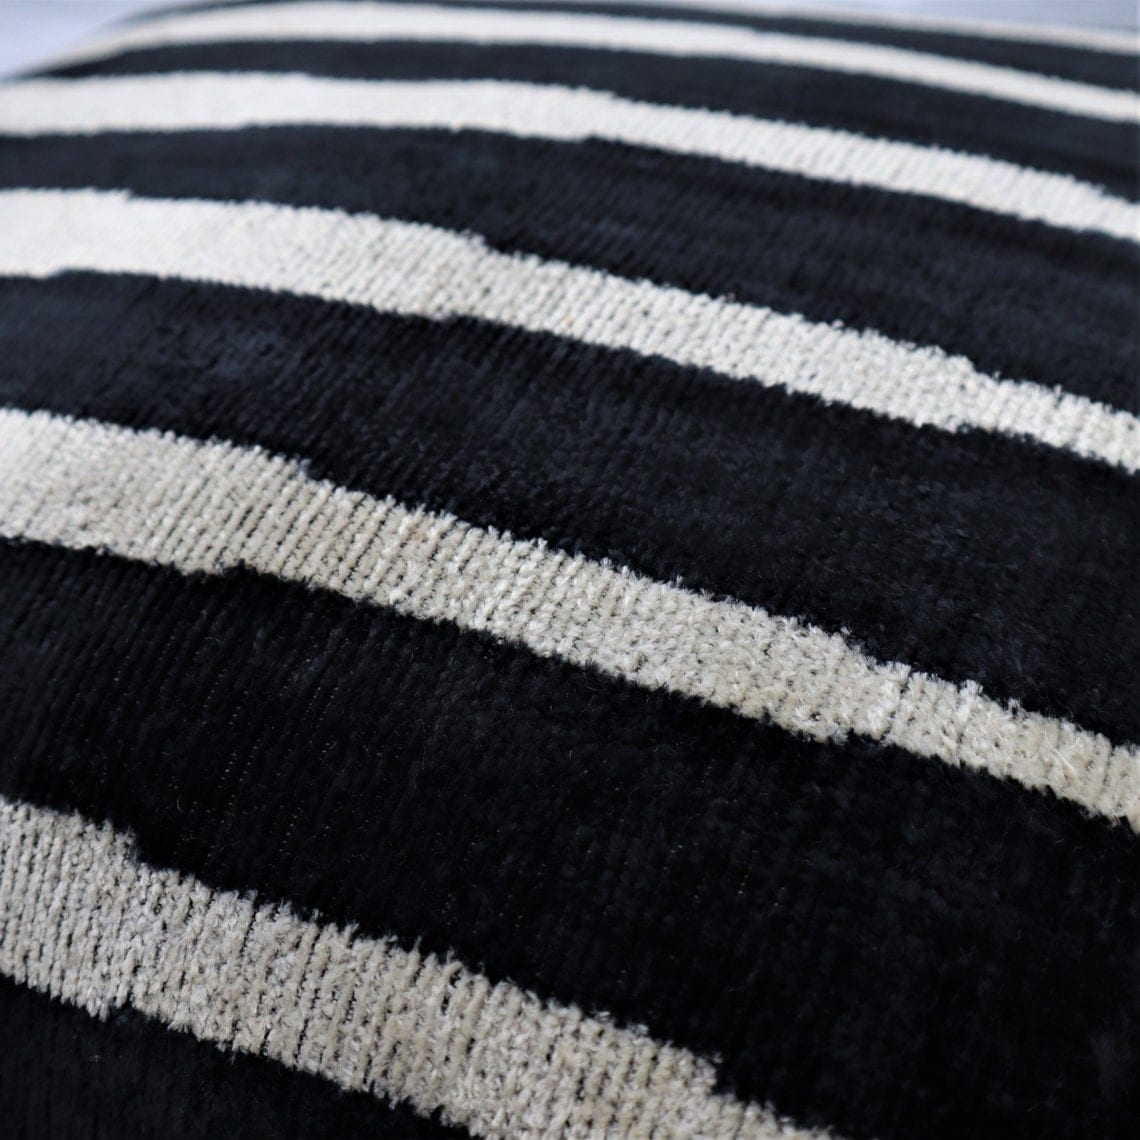 Handmade Modern Throw Pillows with Insert Black White Velvet 16x16 in - Black/White